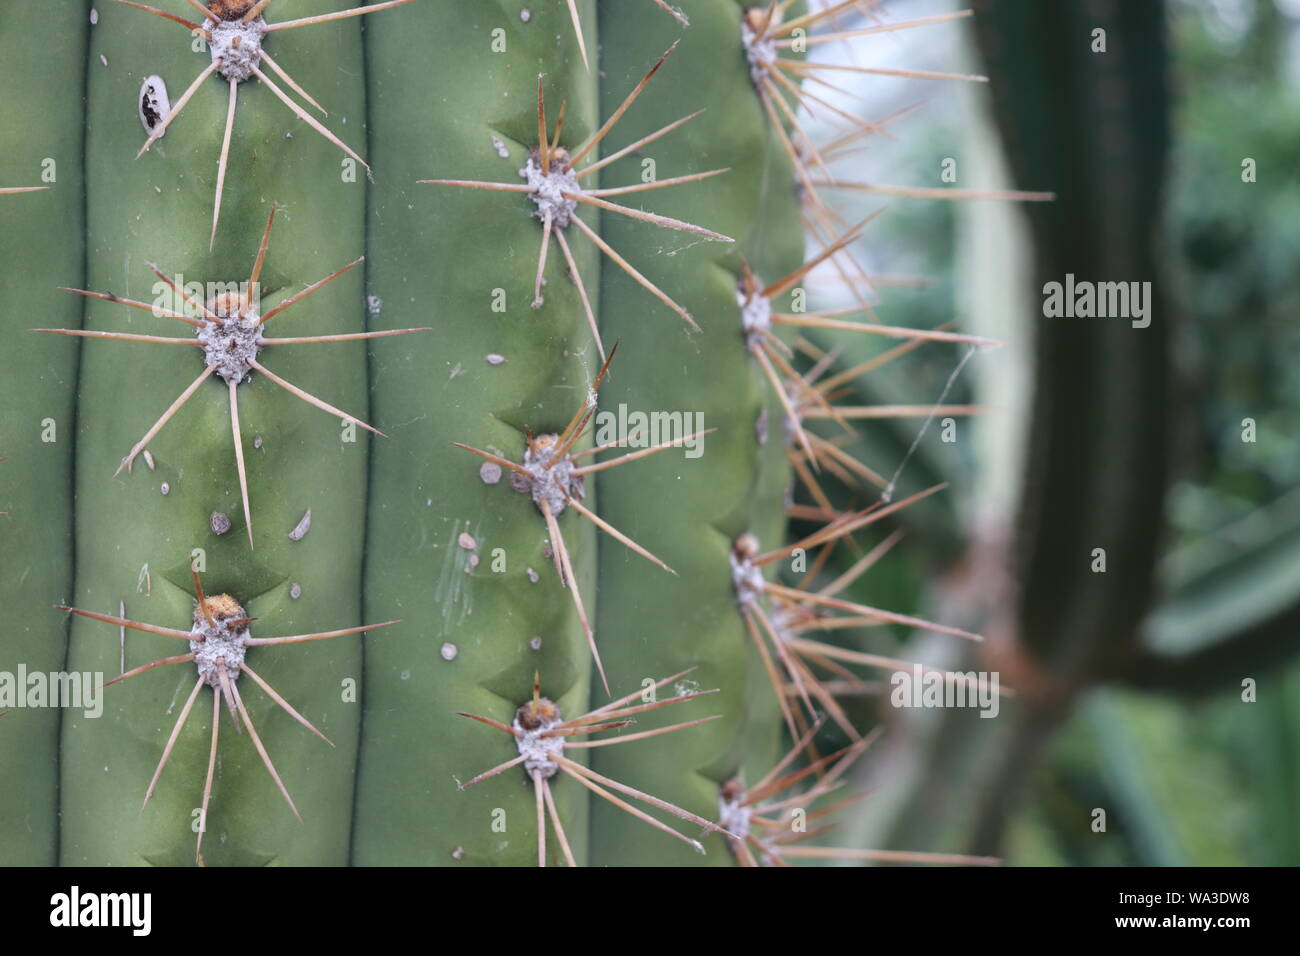 Cactus in close up Stock Photo